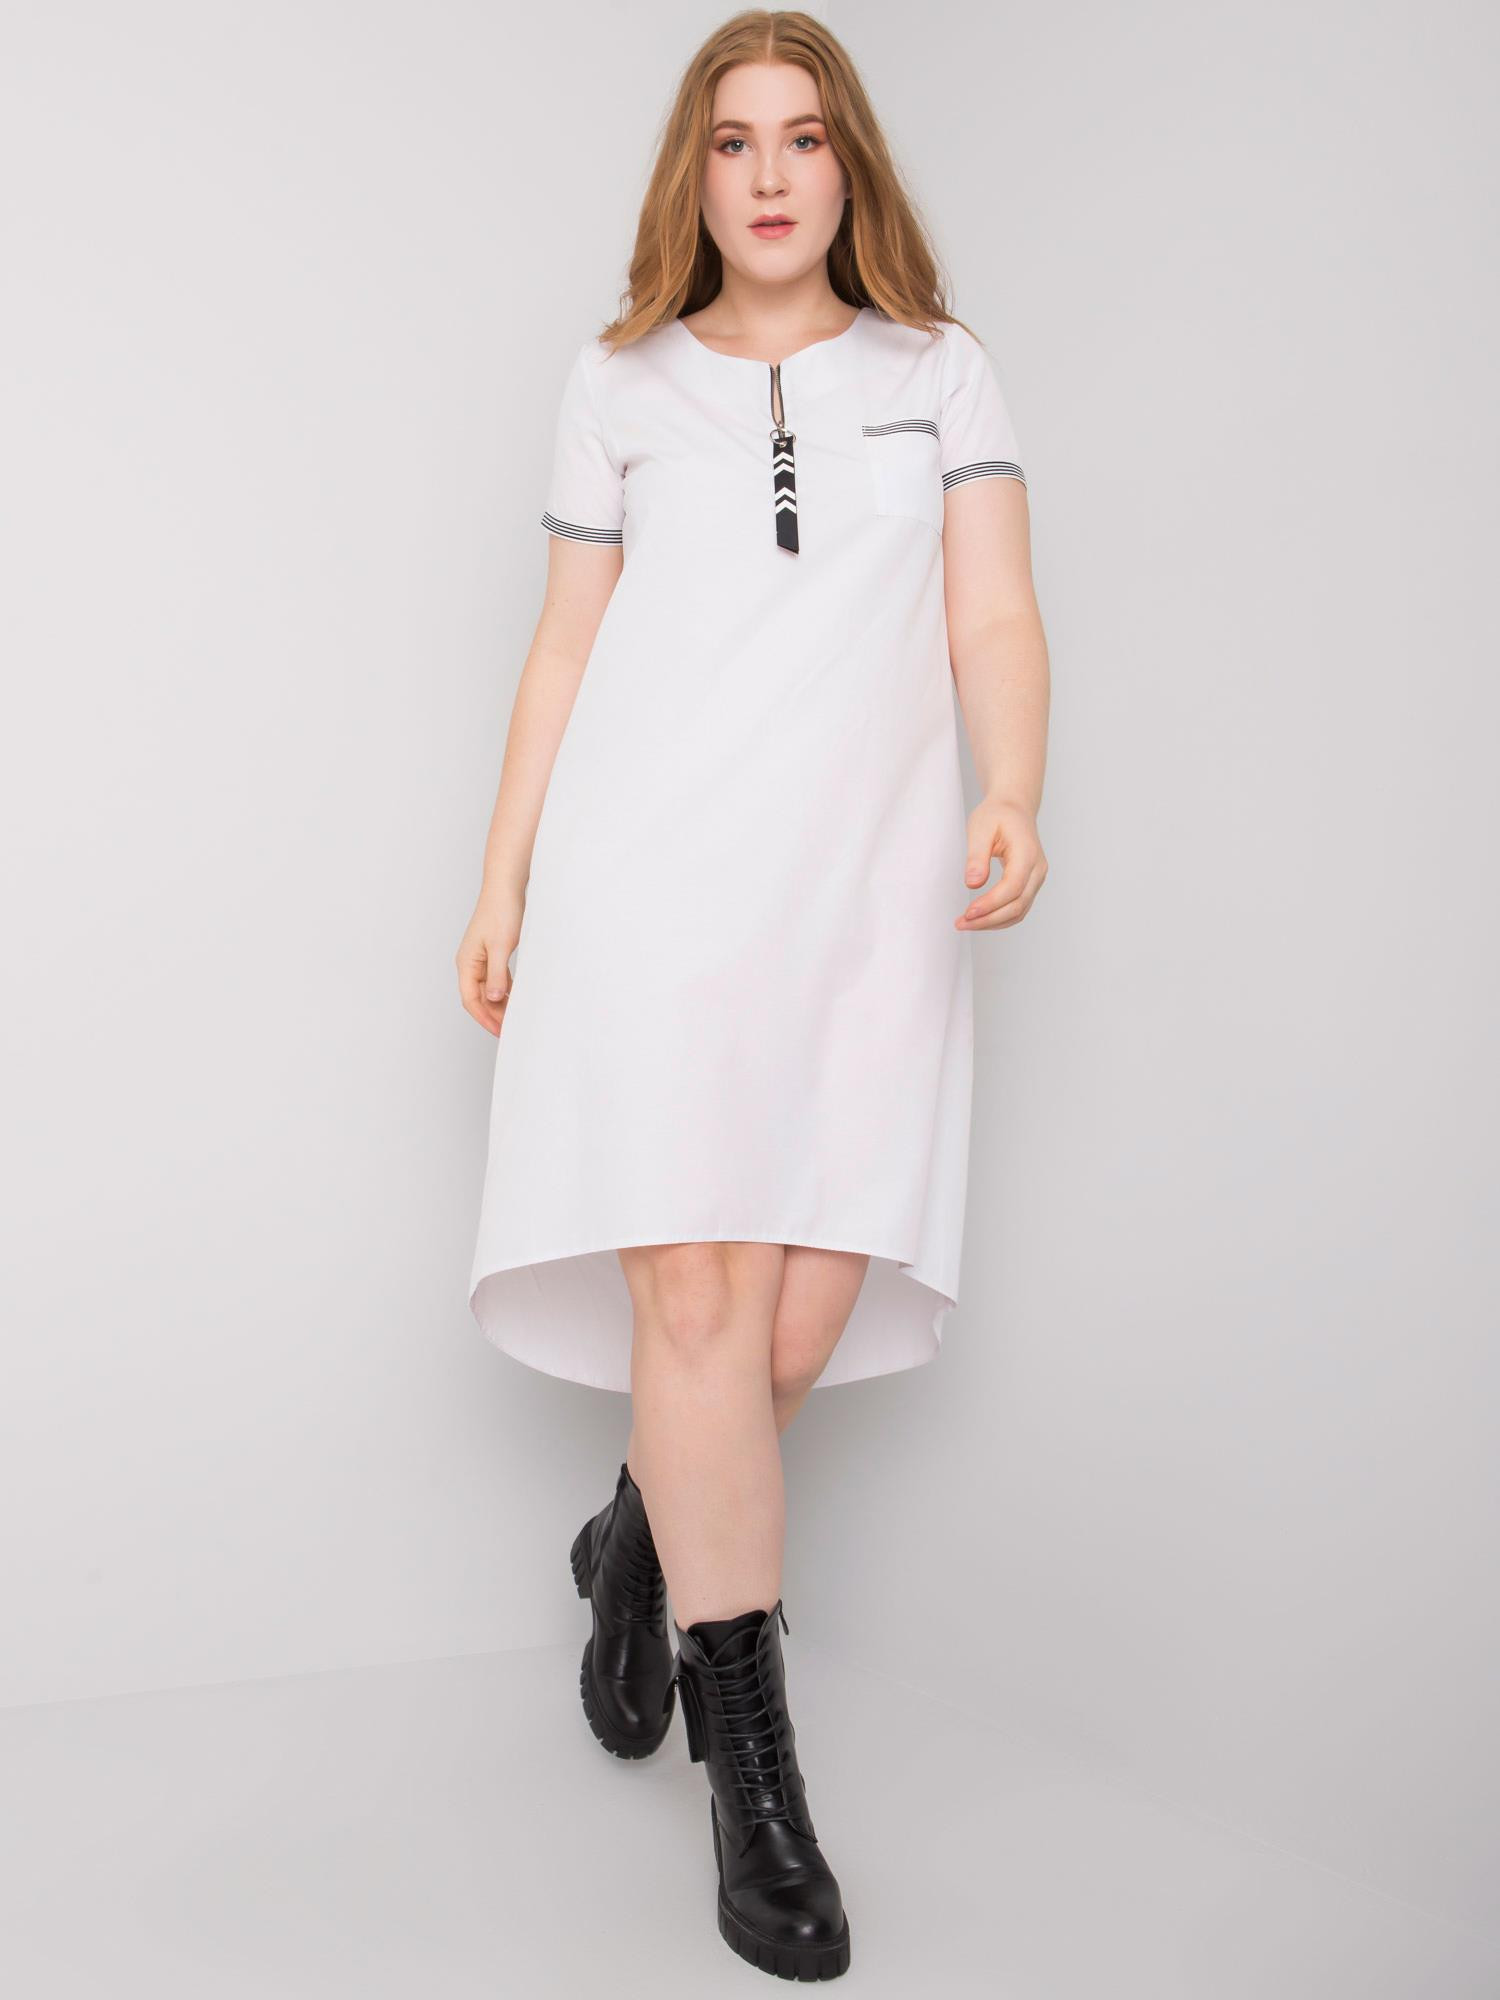 Bílé bavlněné šaty plus size 46